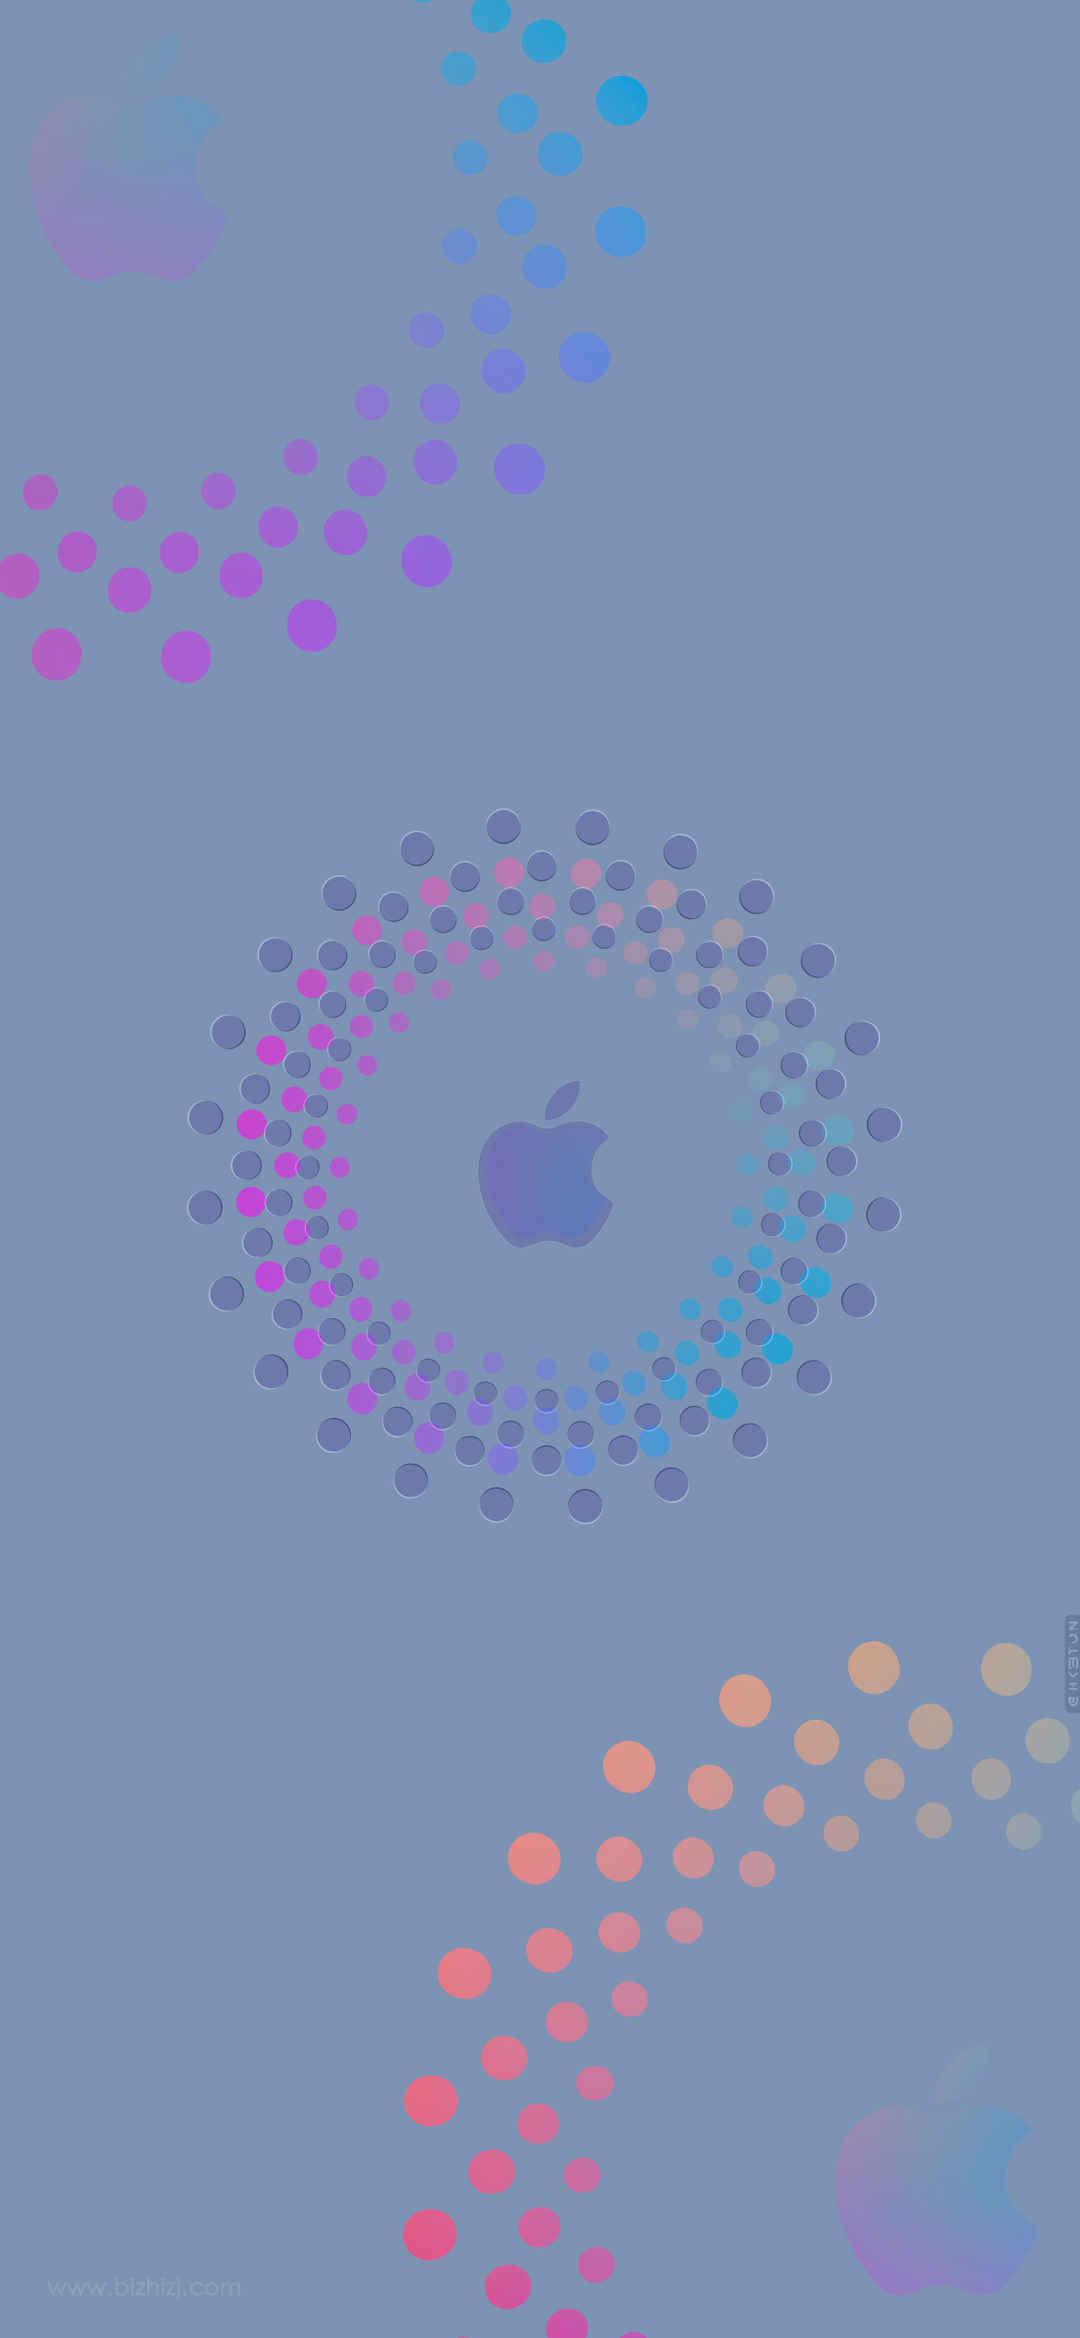 苹果logo系列手机高清壁纸